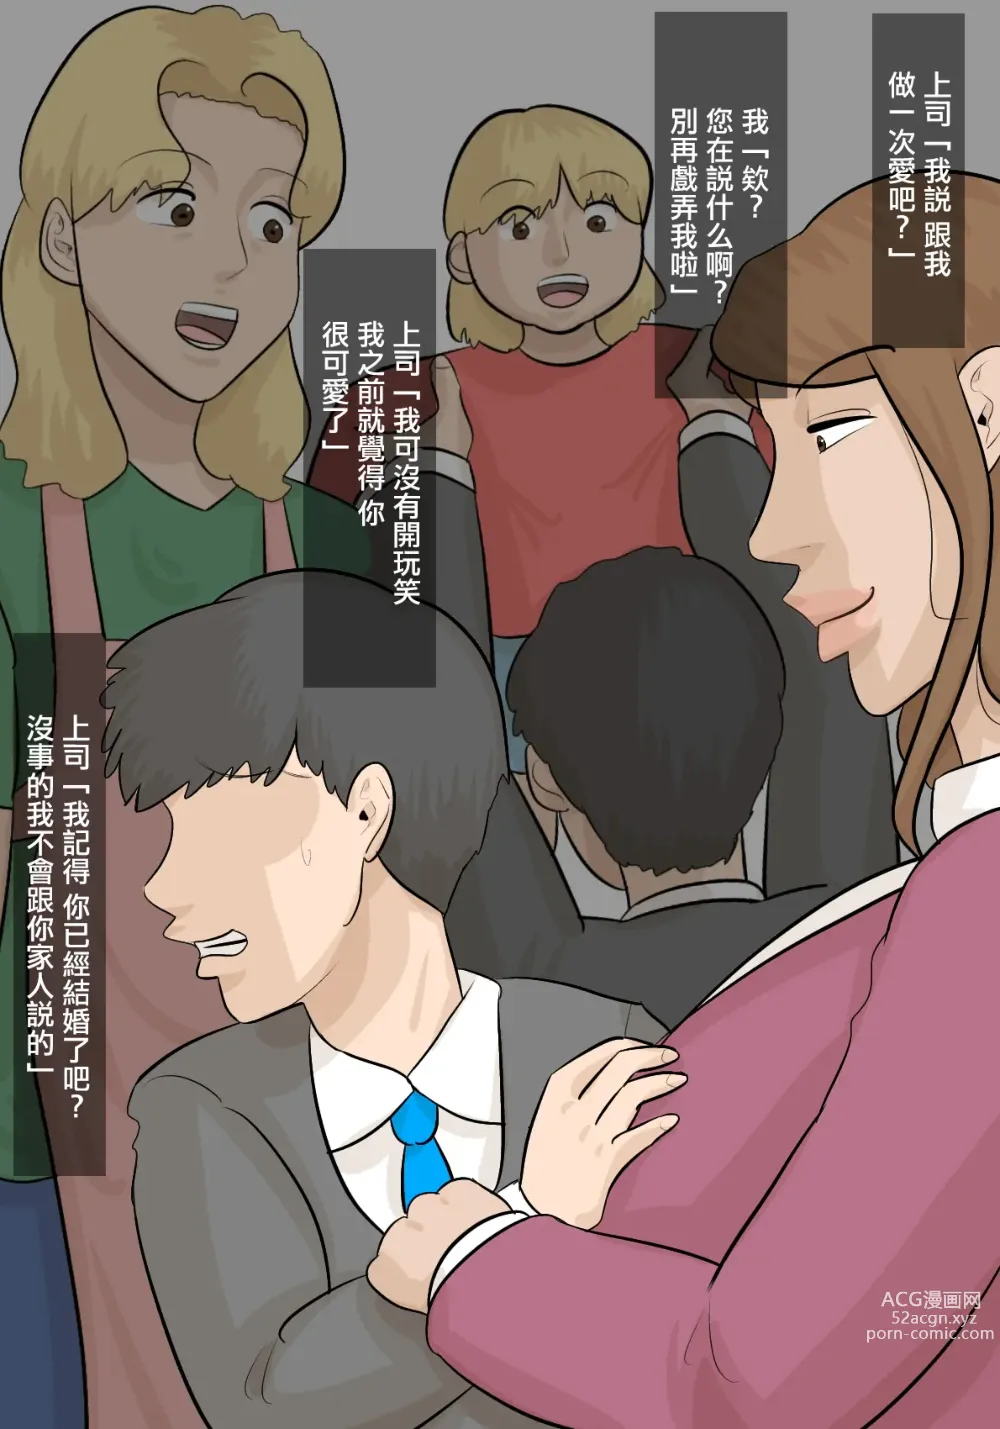 Page 13 of doujinshi 被女上司性騷擾而搶走的丈夫